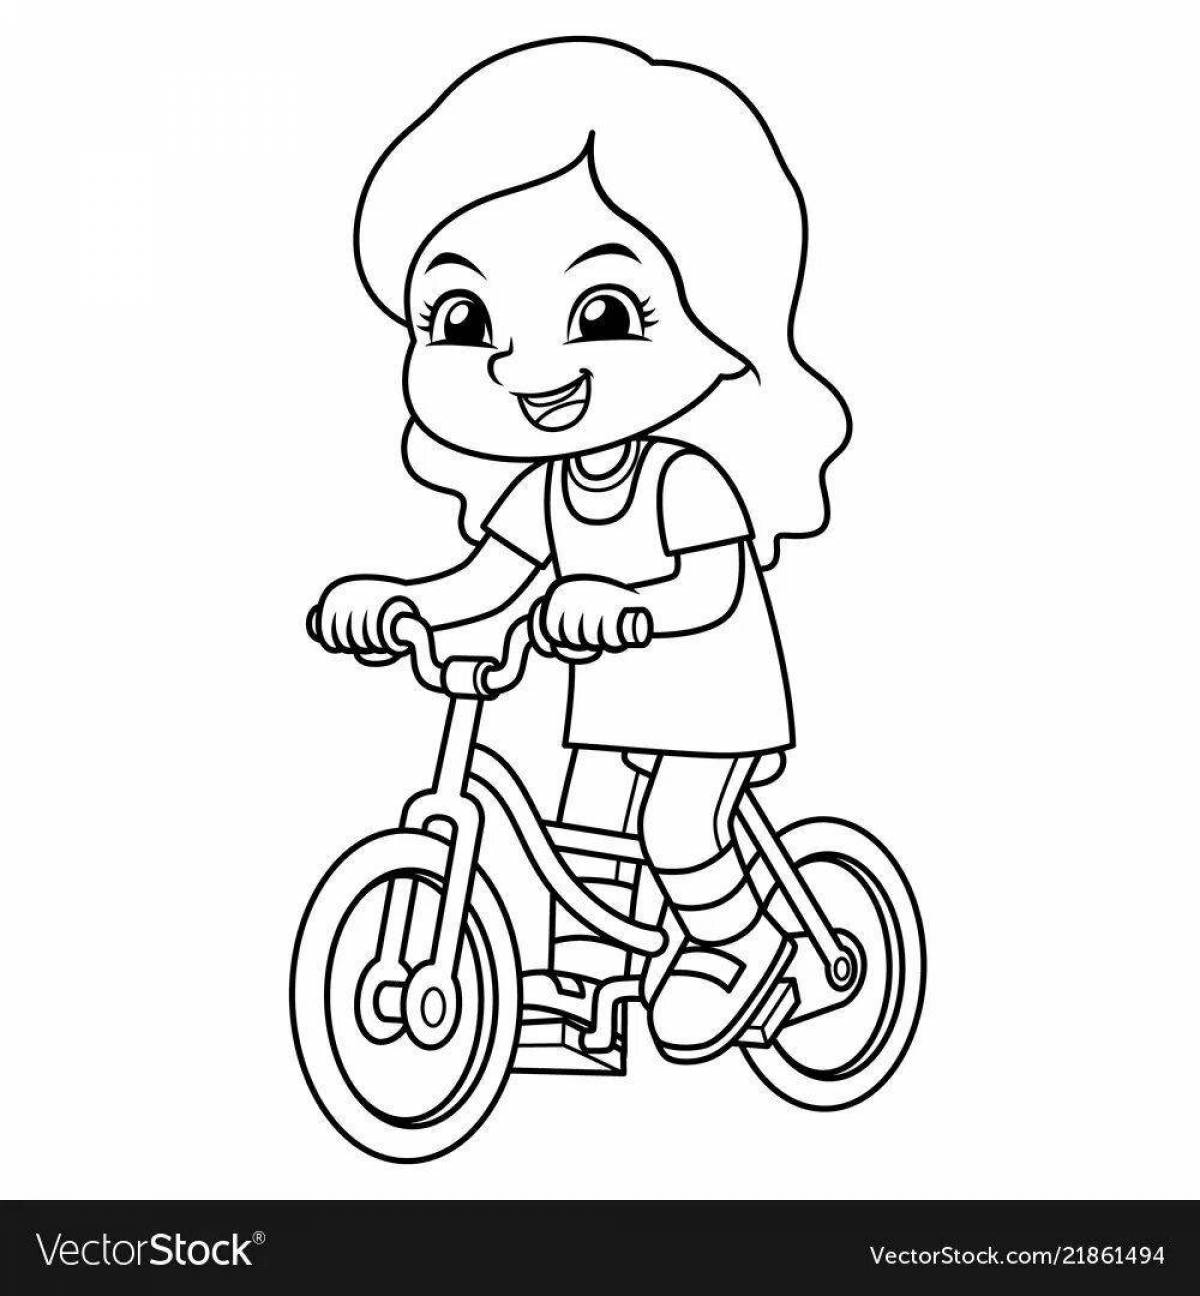 Girl on bike #8